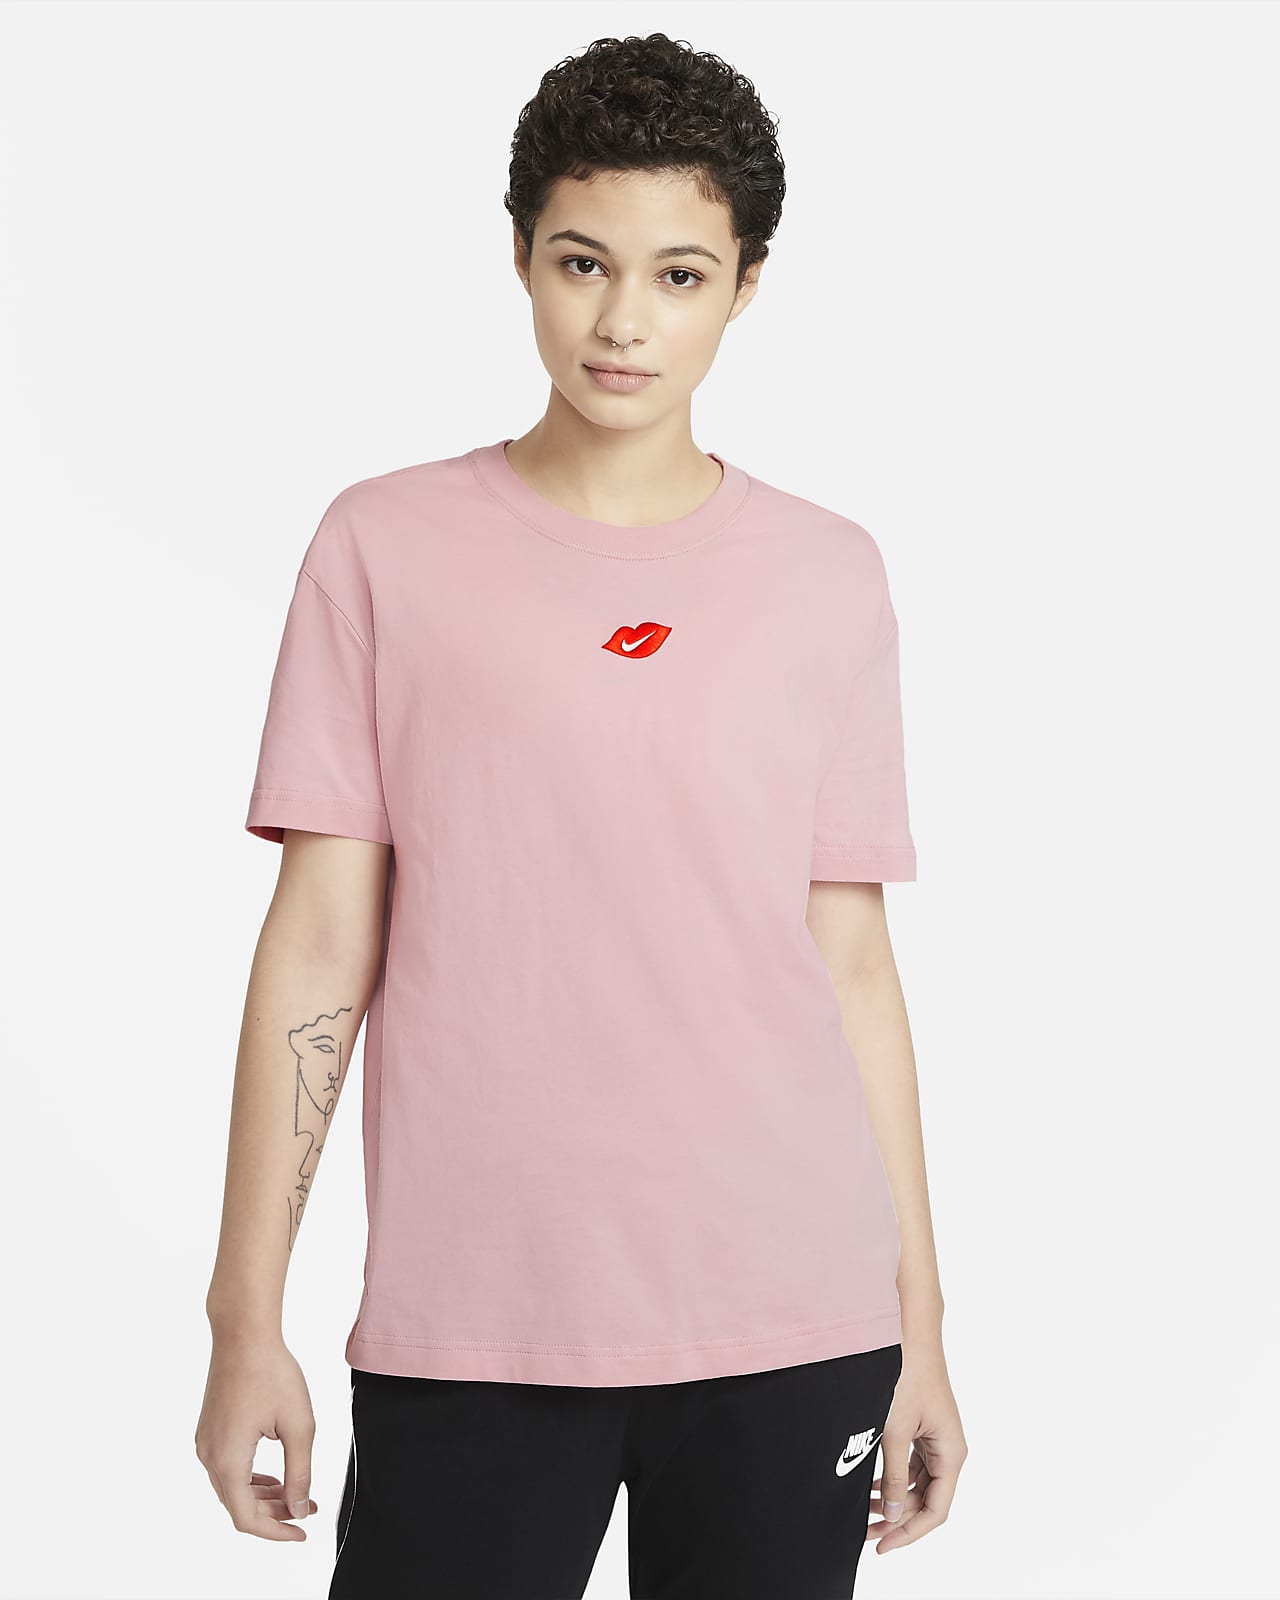 Nike Sportswear Women's T-Shirt. Nike SG